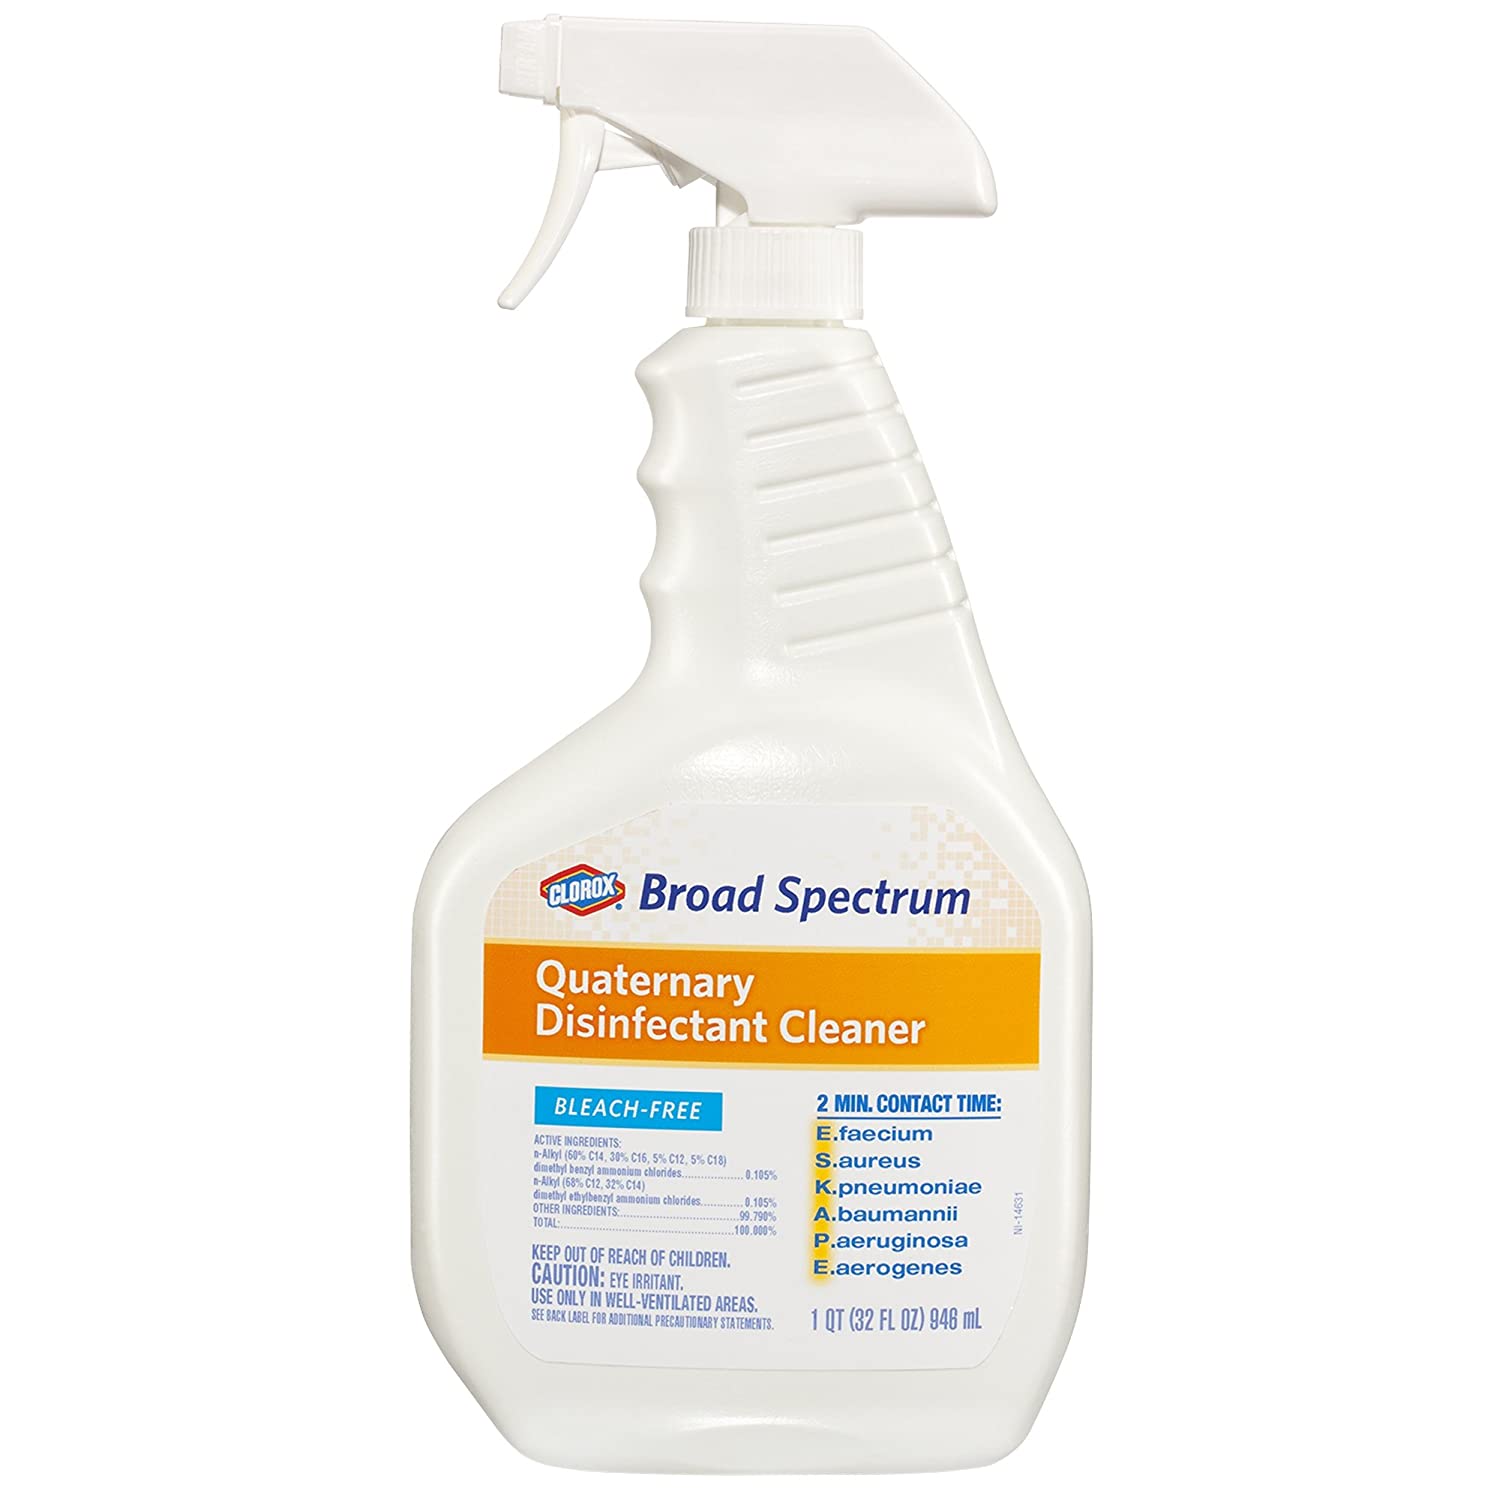  Clorox Broad Spectrum Quaternary Disinfectant 